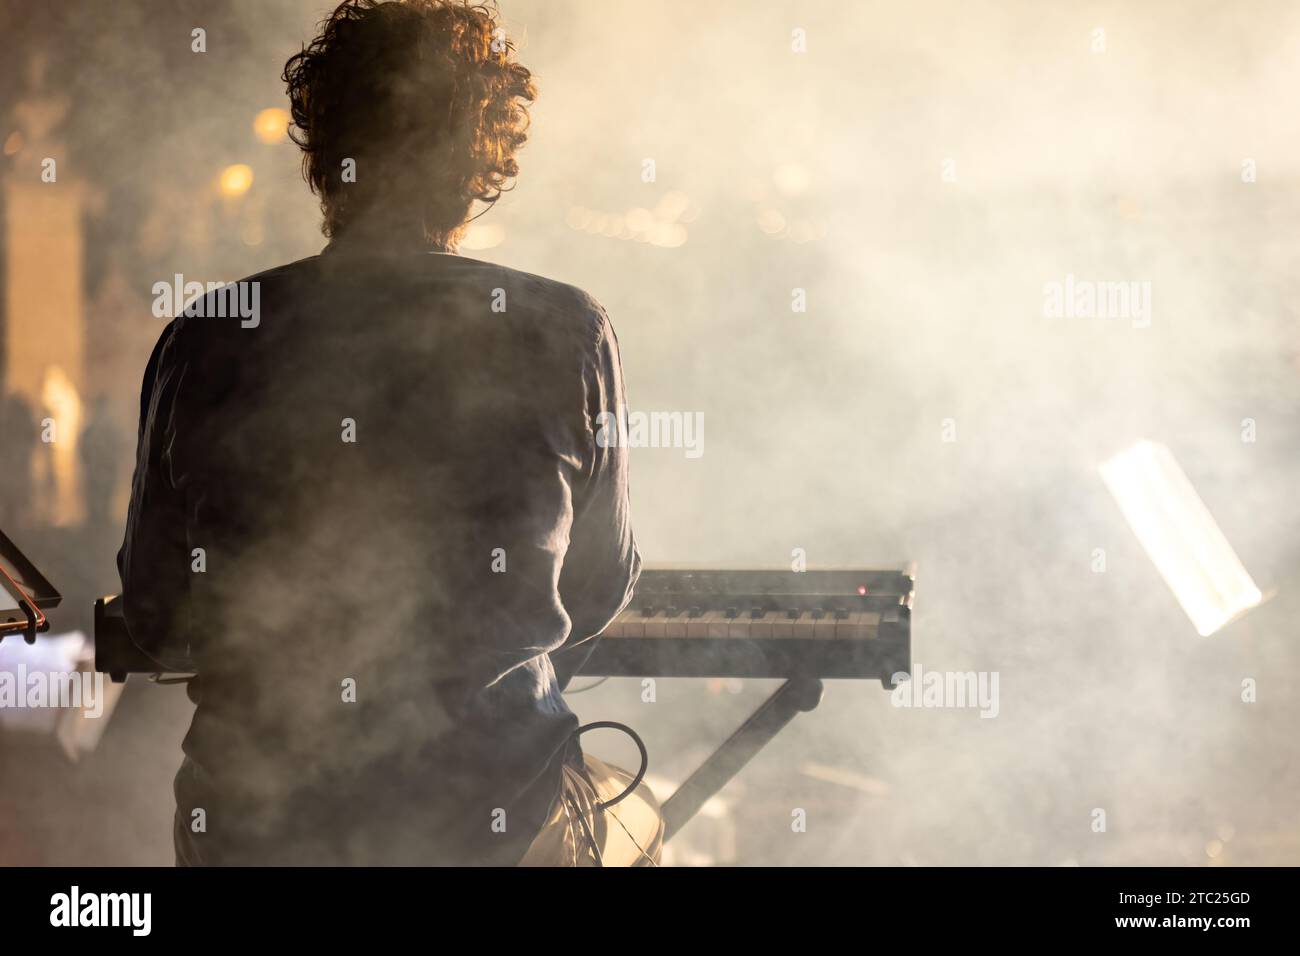 Un pianiste vu de derrière, jouant dans un concert de nuit avec une atmosphère brumeuse mystique. Banque D'Images